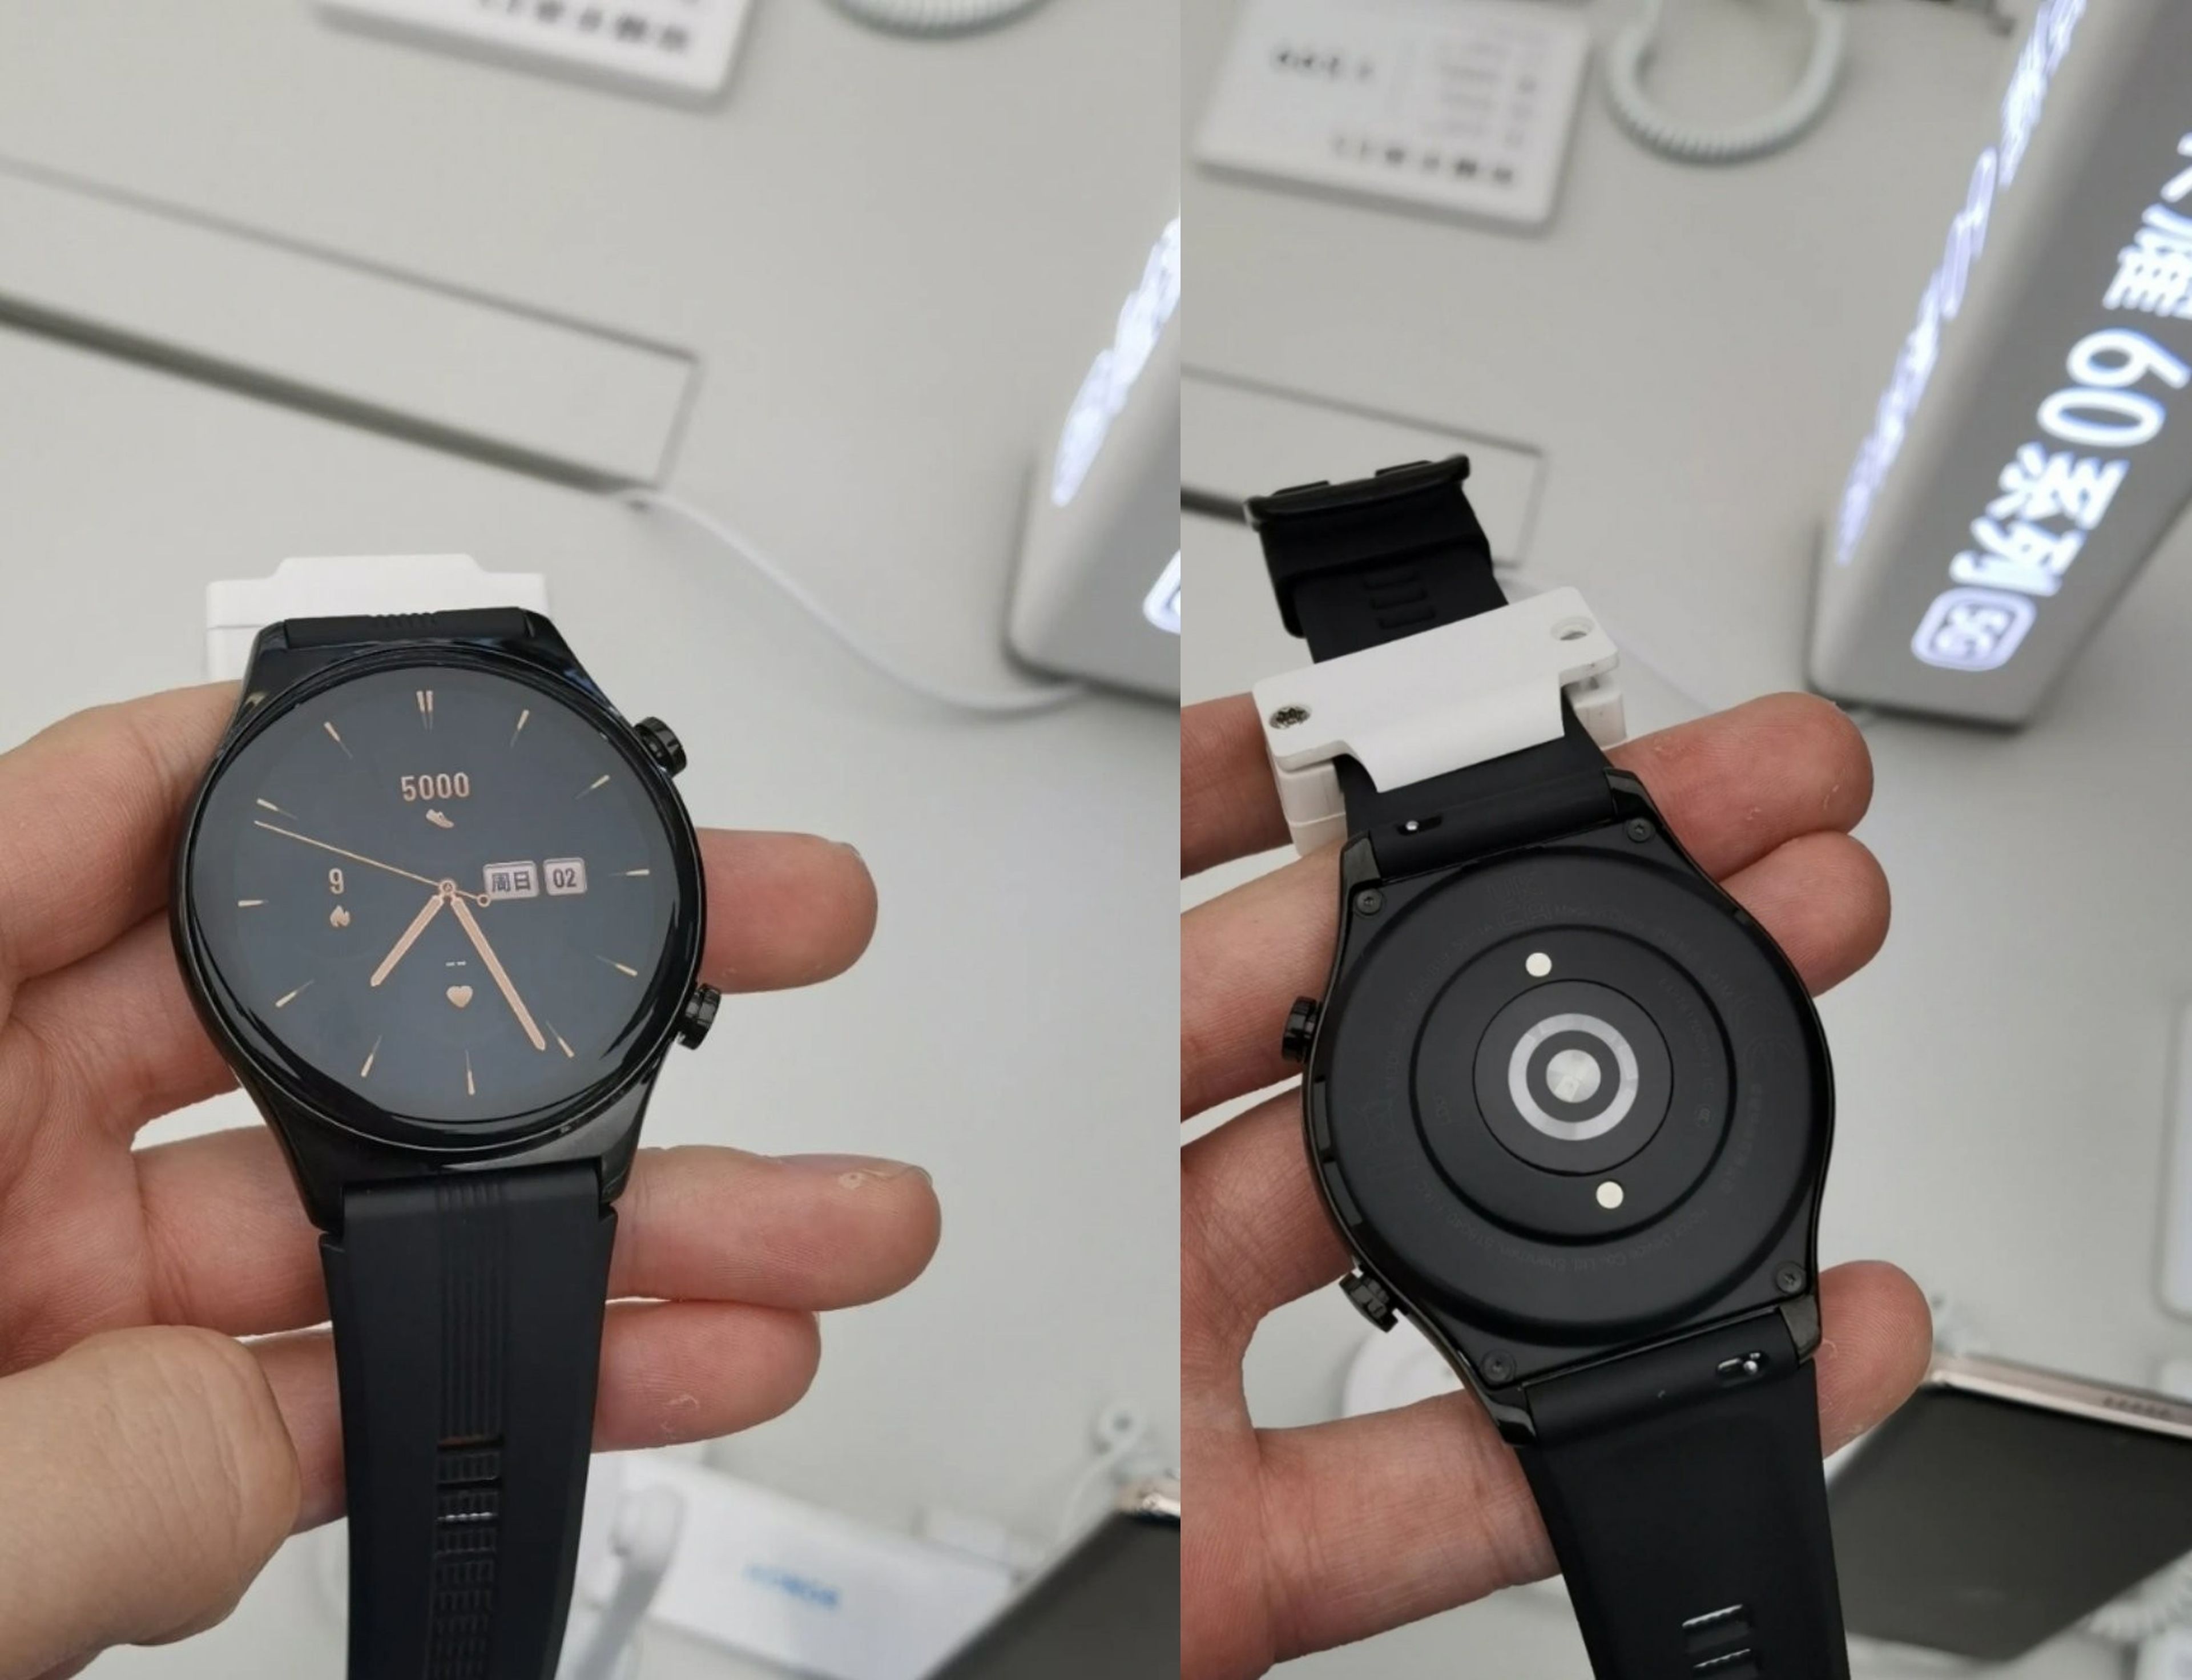 El Honor Watch GS 3 ya en España: características y precio del reloj  inteligente